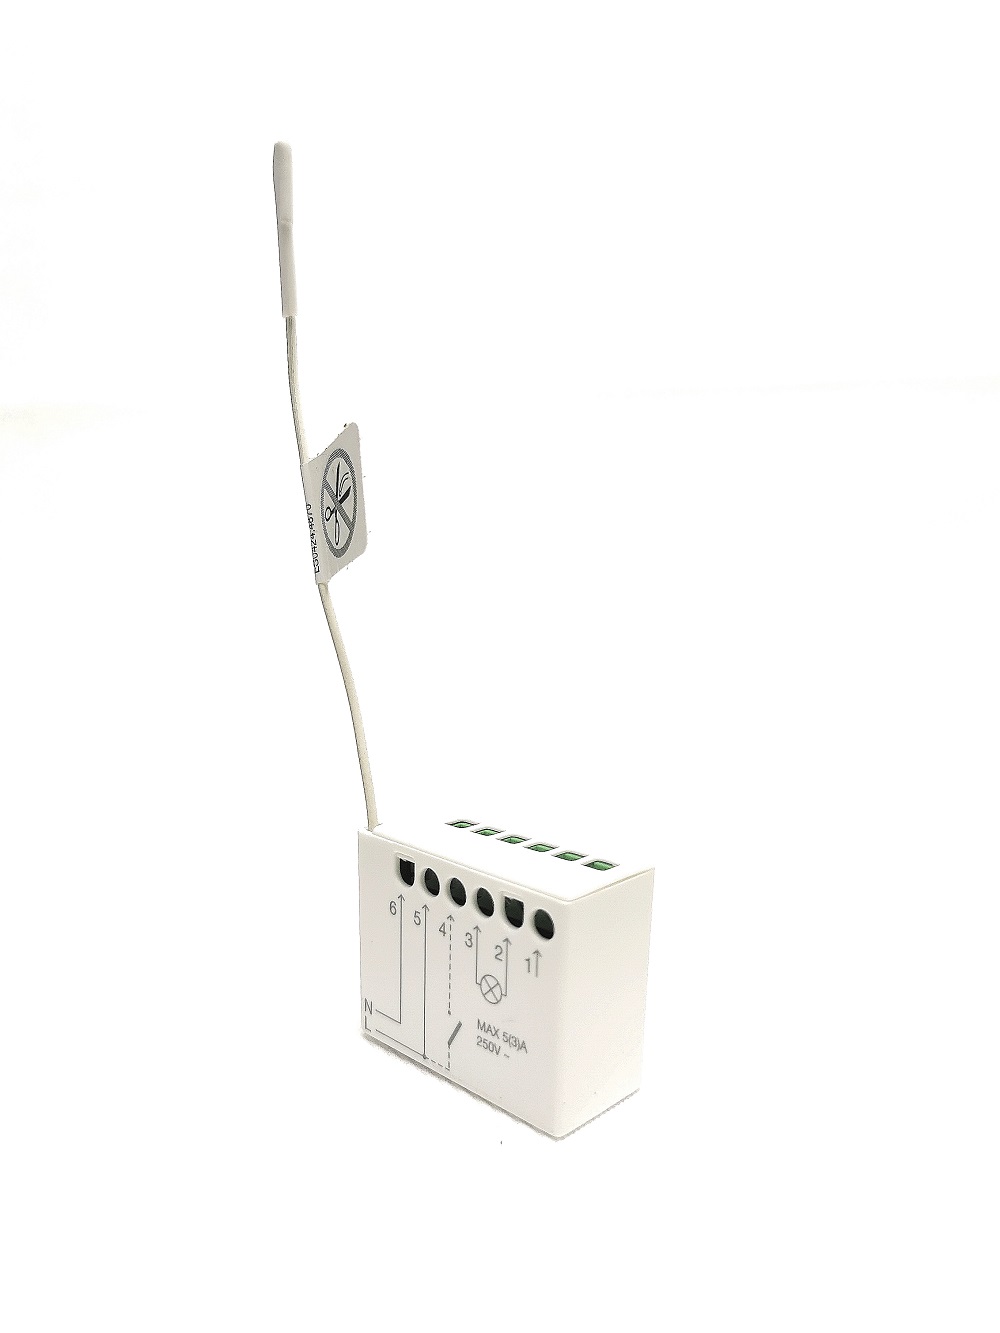 Logique de commande miniaturisée Nice TT2L pour la commande d'installations d'éclairage 230 Vca. Récepteur radio intégré. Fréquence 433Mhz